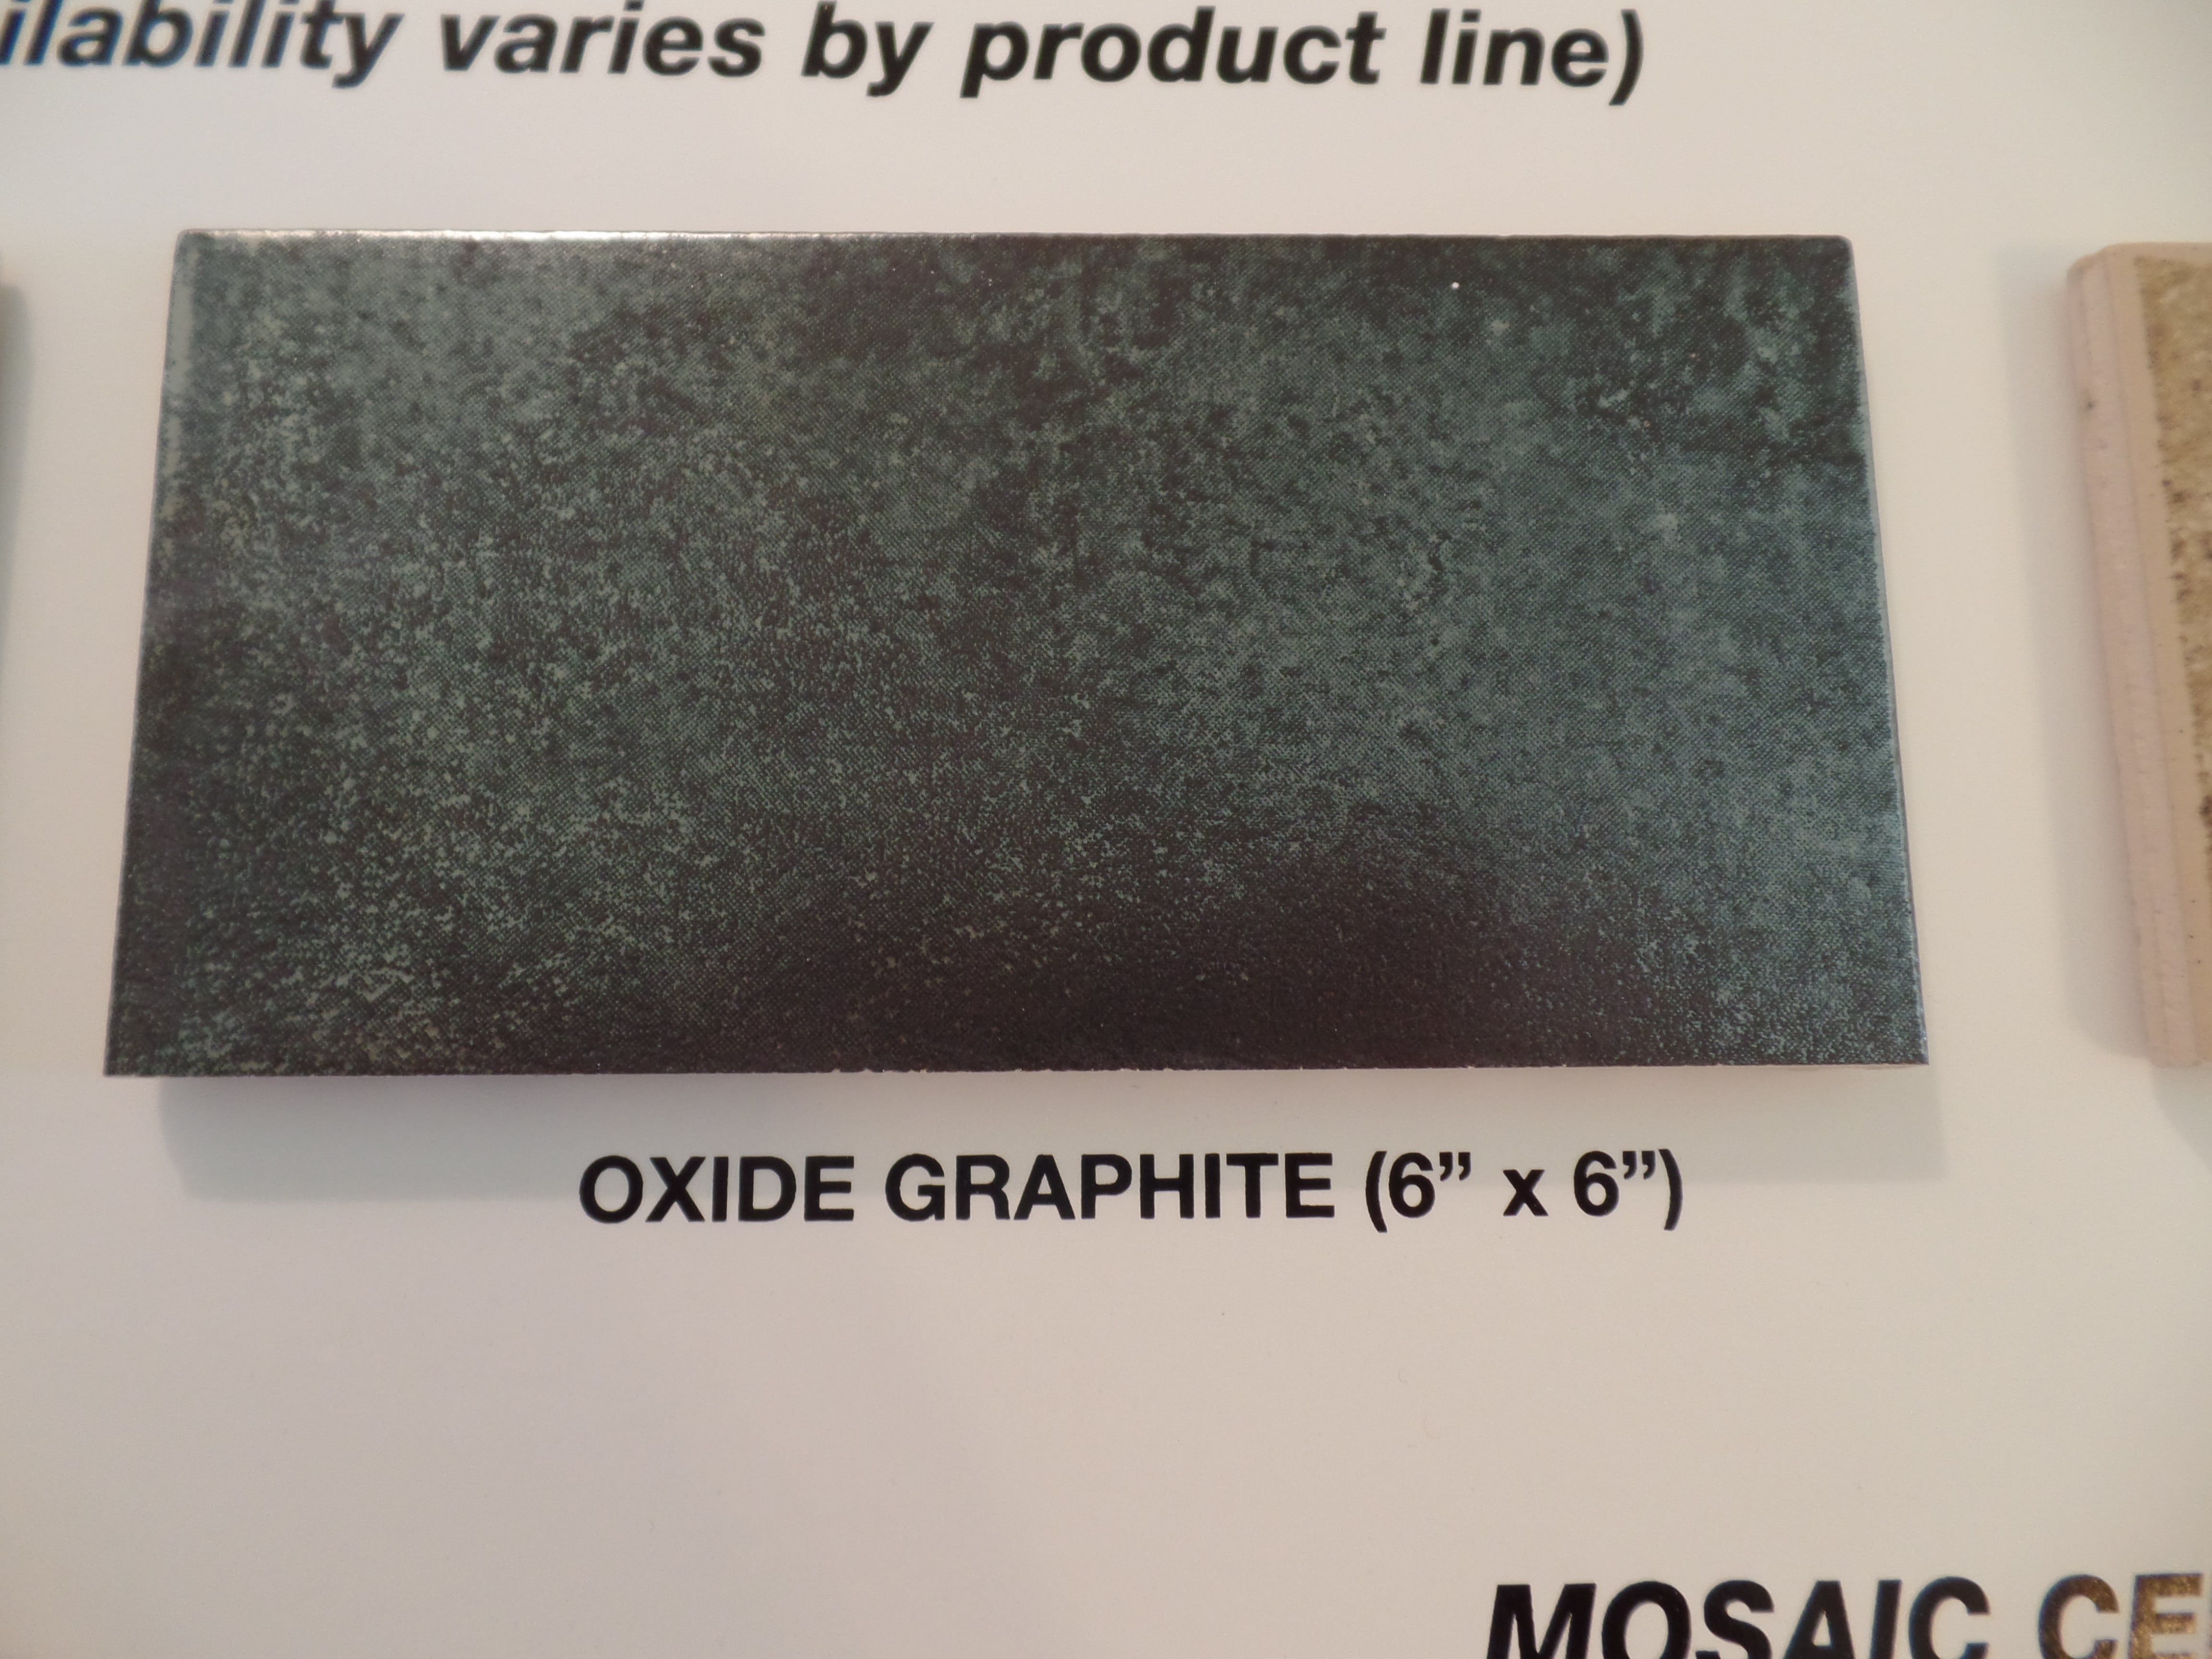 Tile - Oxide Graphite.jpg